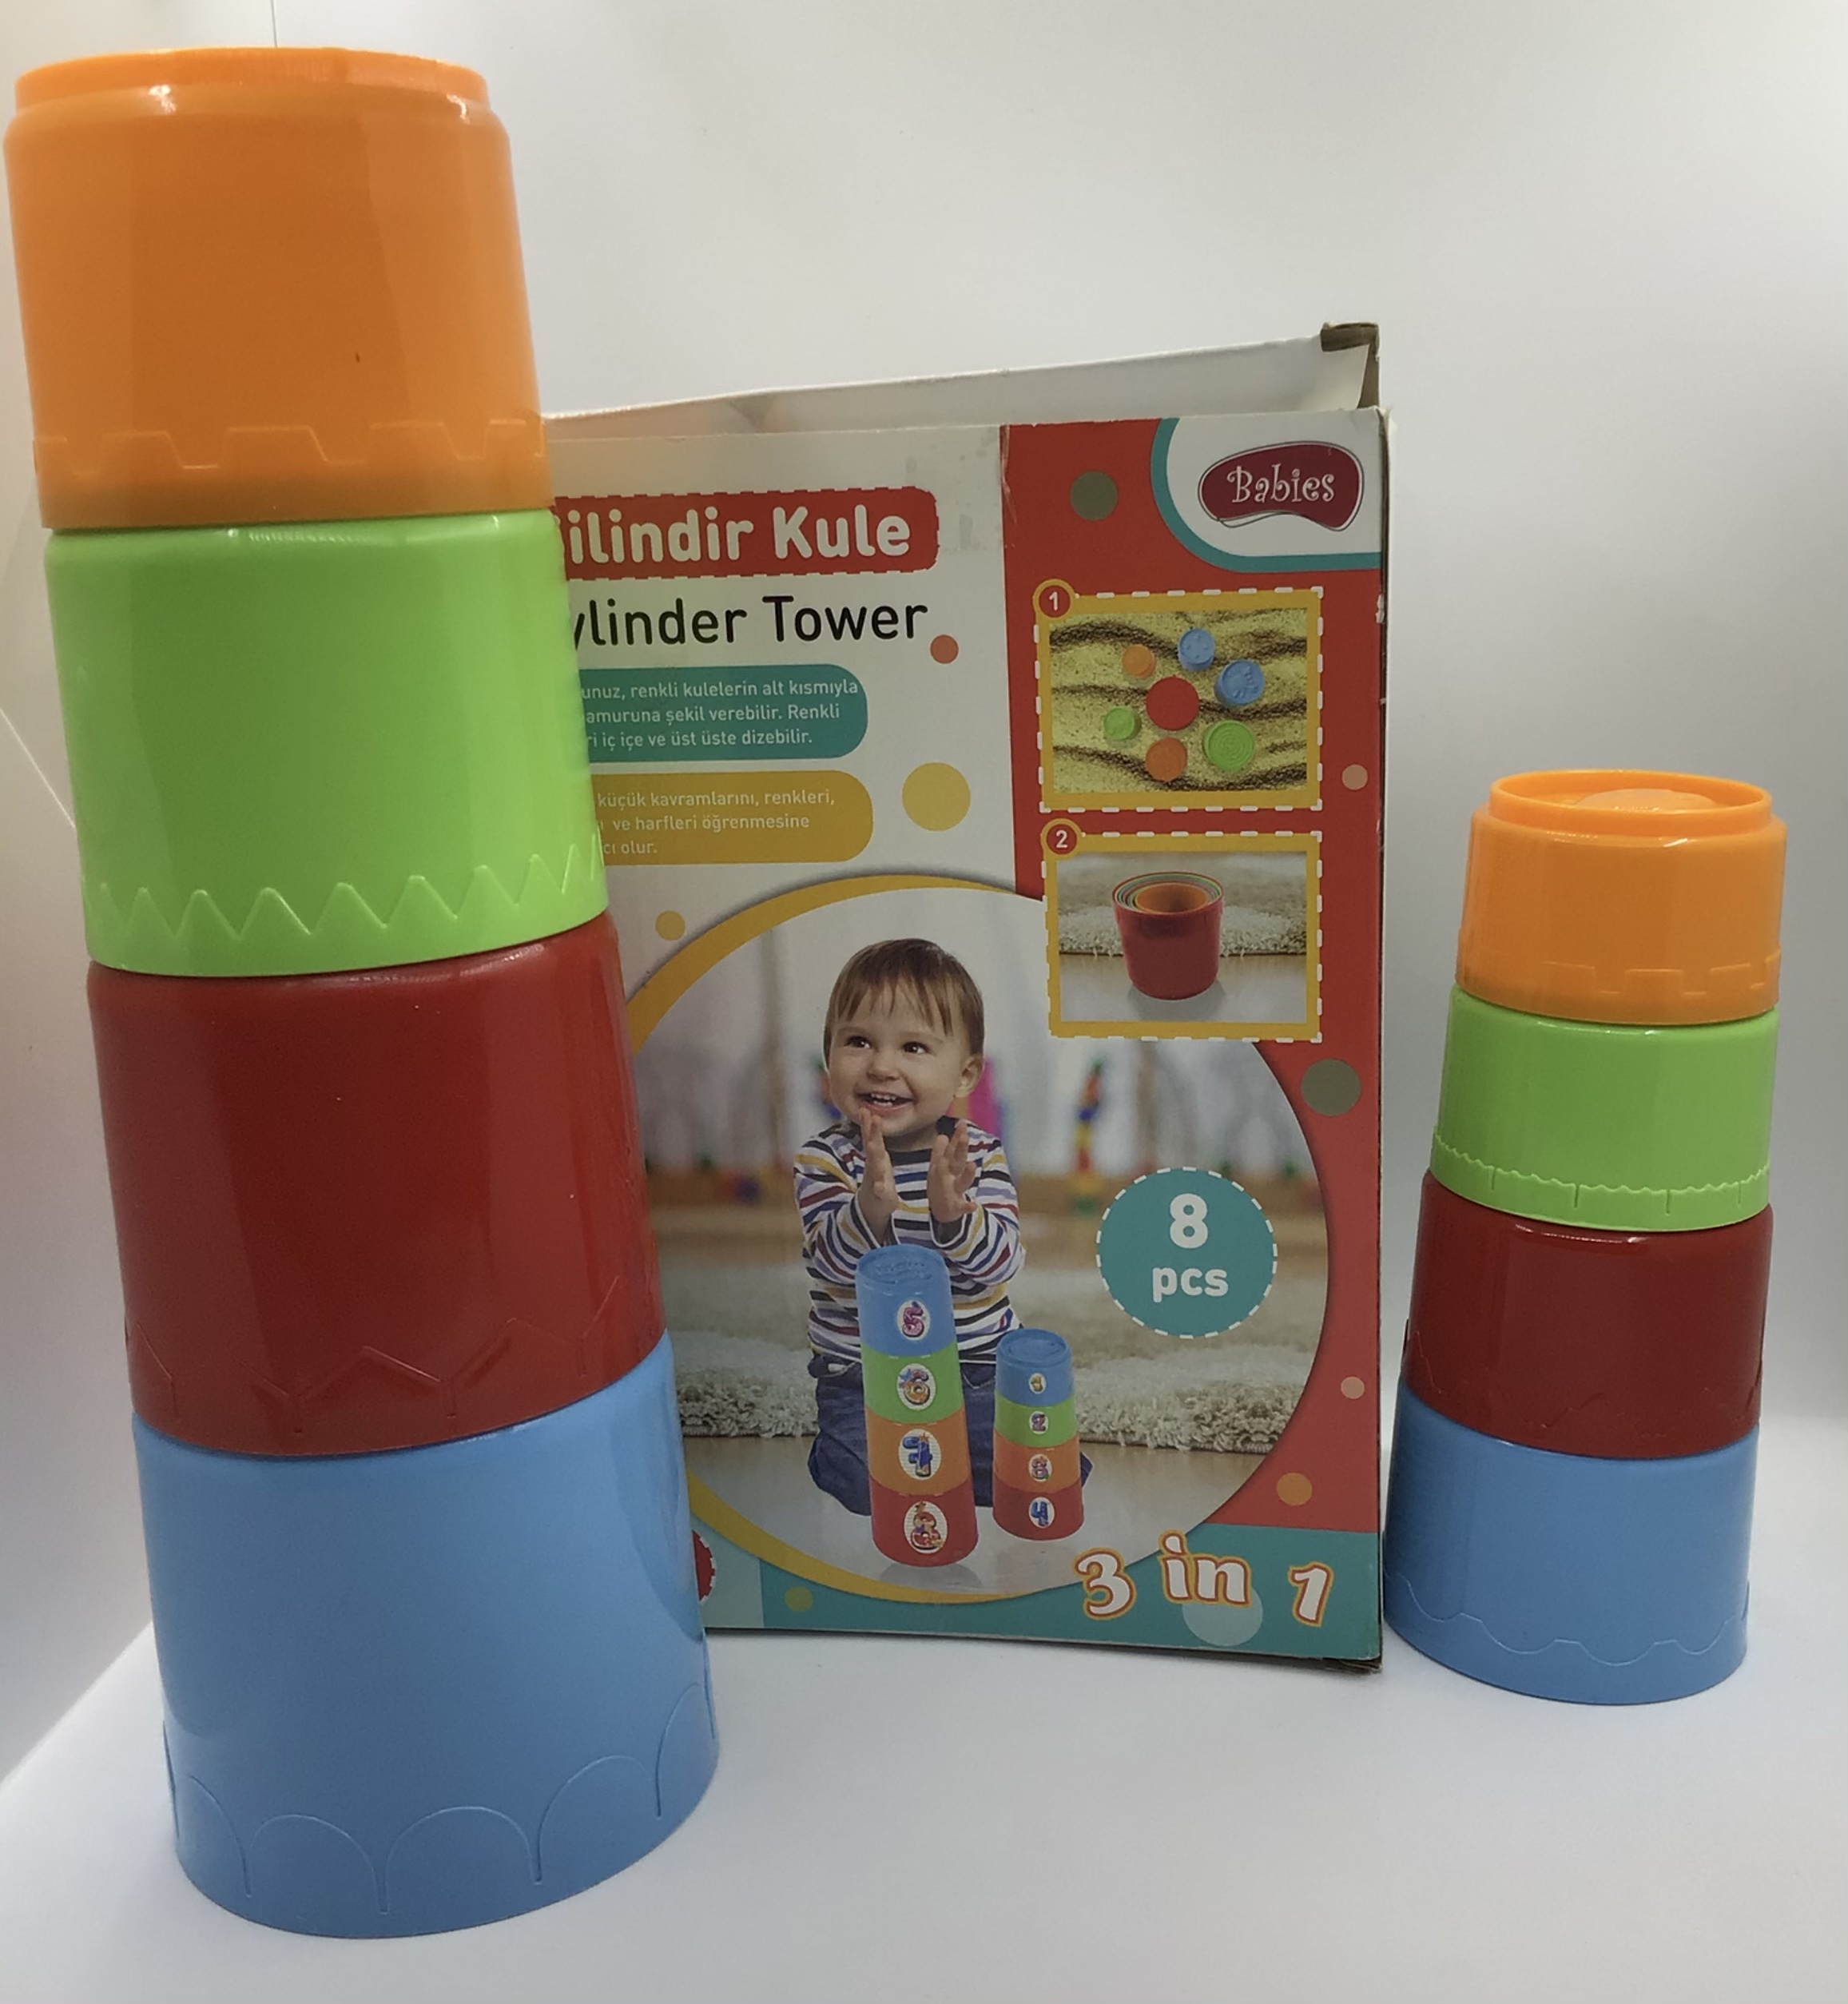 Setul de joc conține o pahare din plastic de culori diferite potrivite pentru a fi jucăria ajută la dezvoltarea motricitate ție fine simțului vizual și a logicii